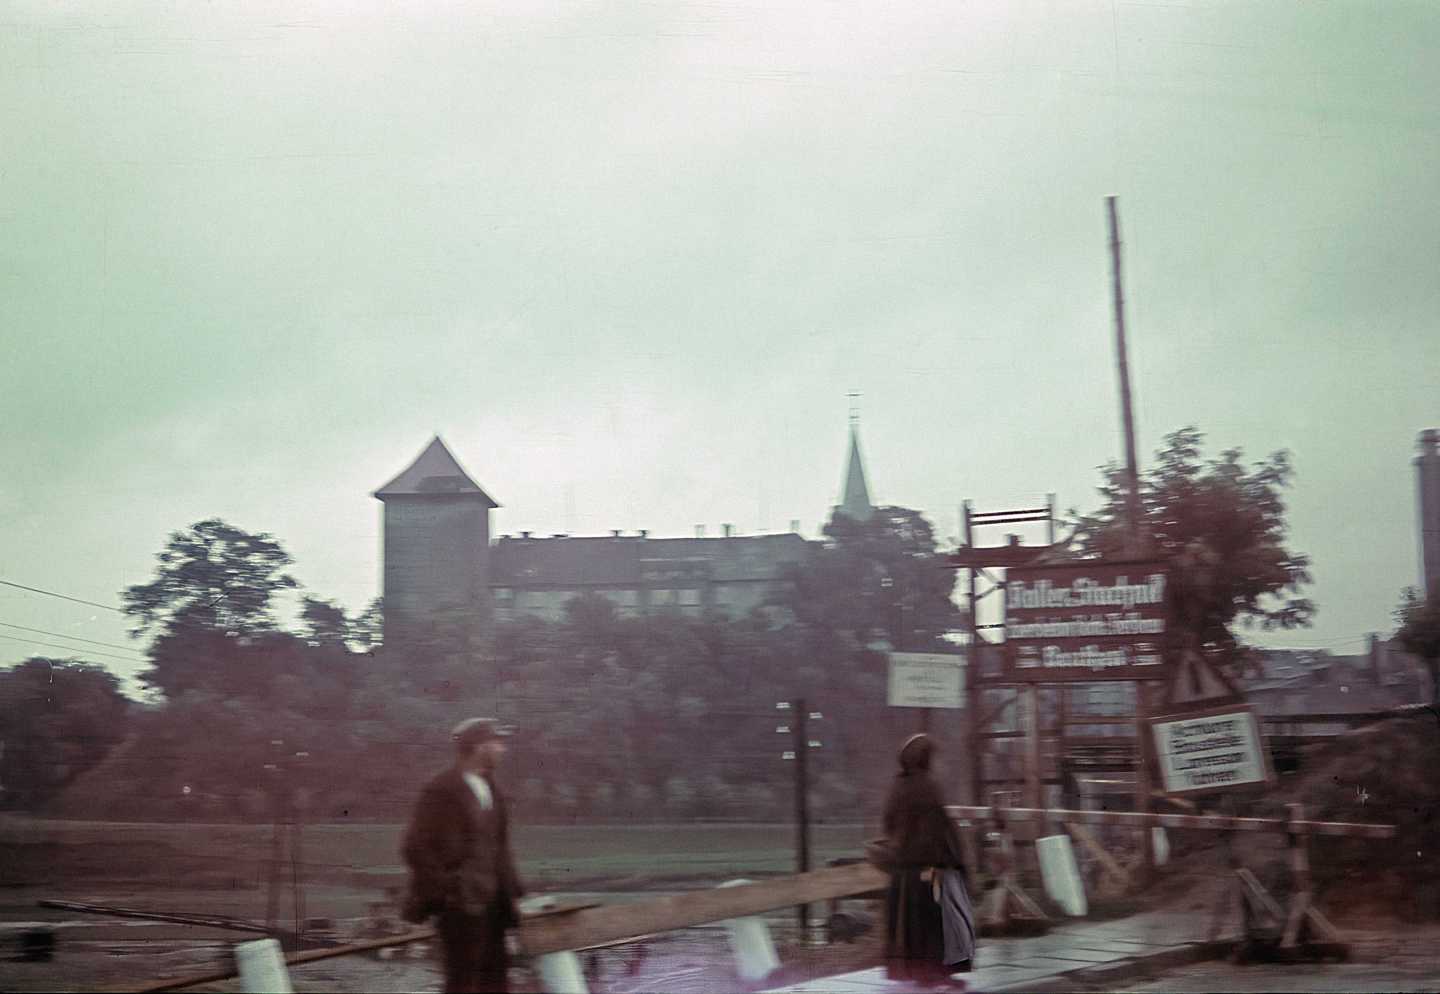 Wzgorze zamkowe w Oświęcimiu około 1940 roku